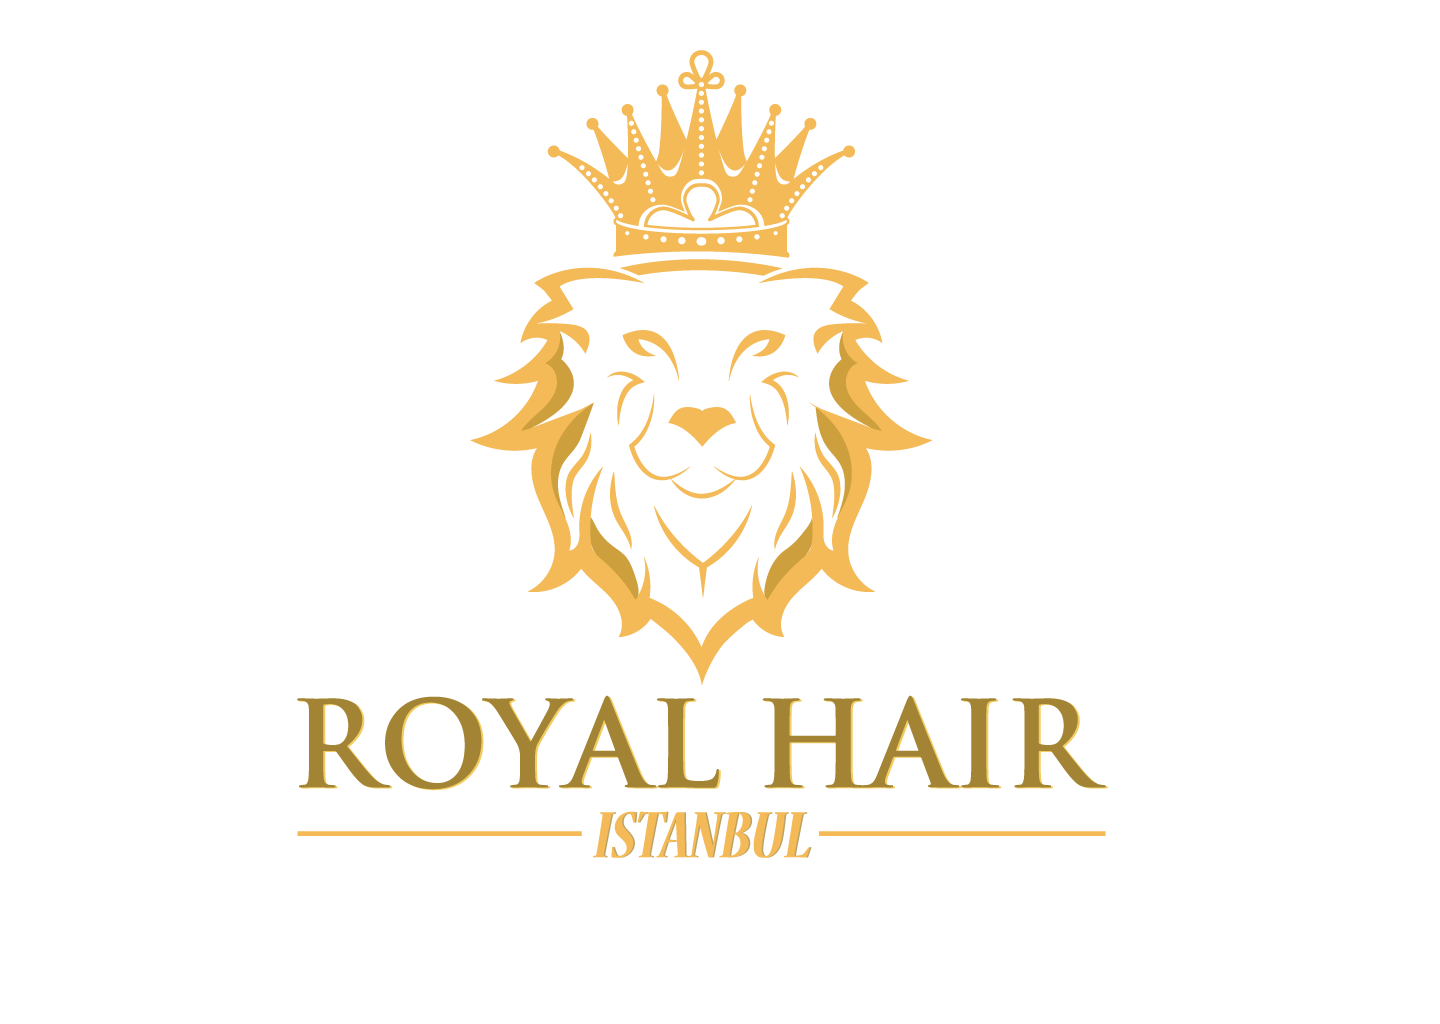 Royal Hair Istanbul